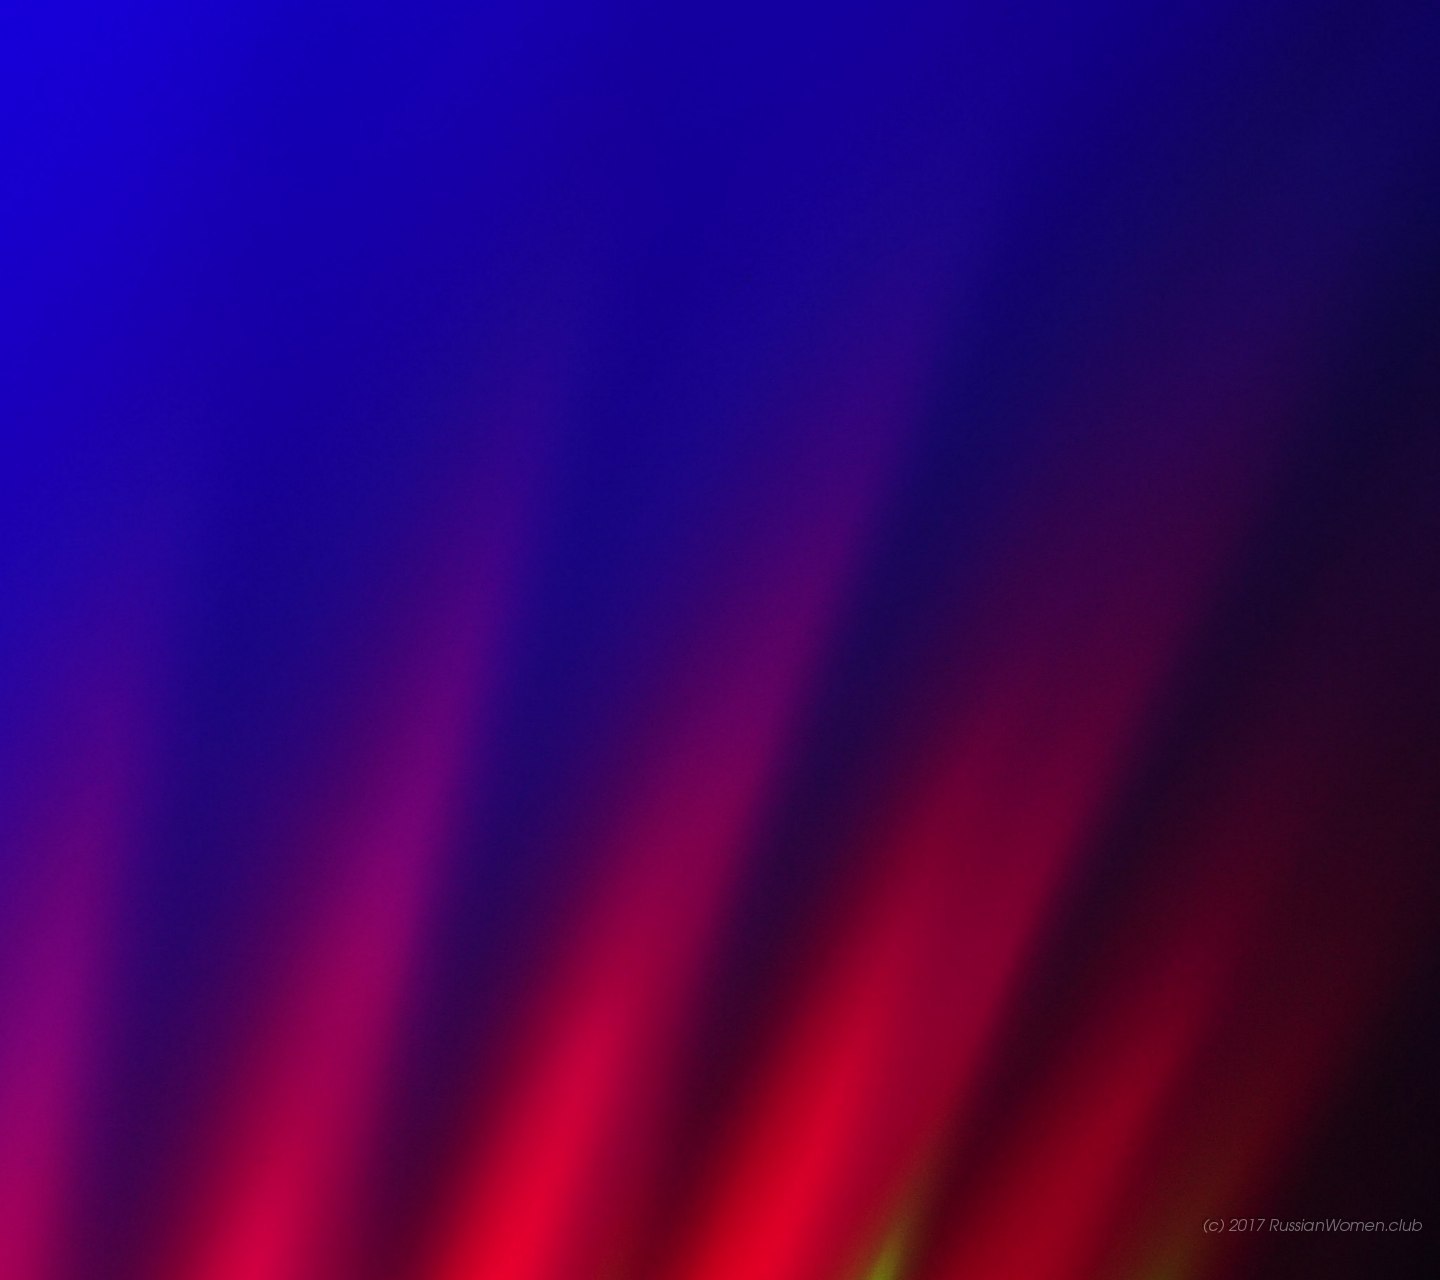 아수스 zenfone 2 레이저 벽지,푸른,제비꽃,보라색,검정,빨간